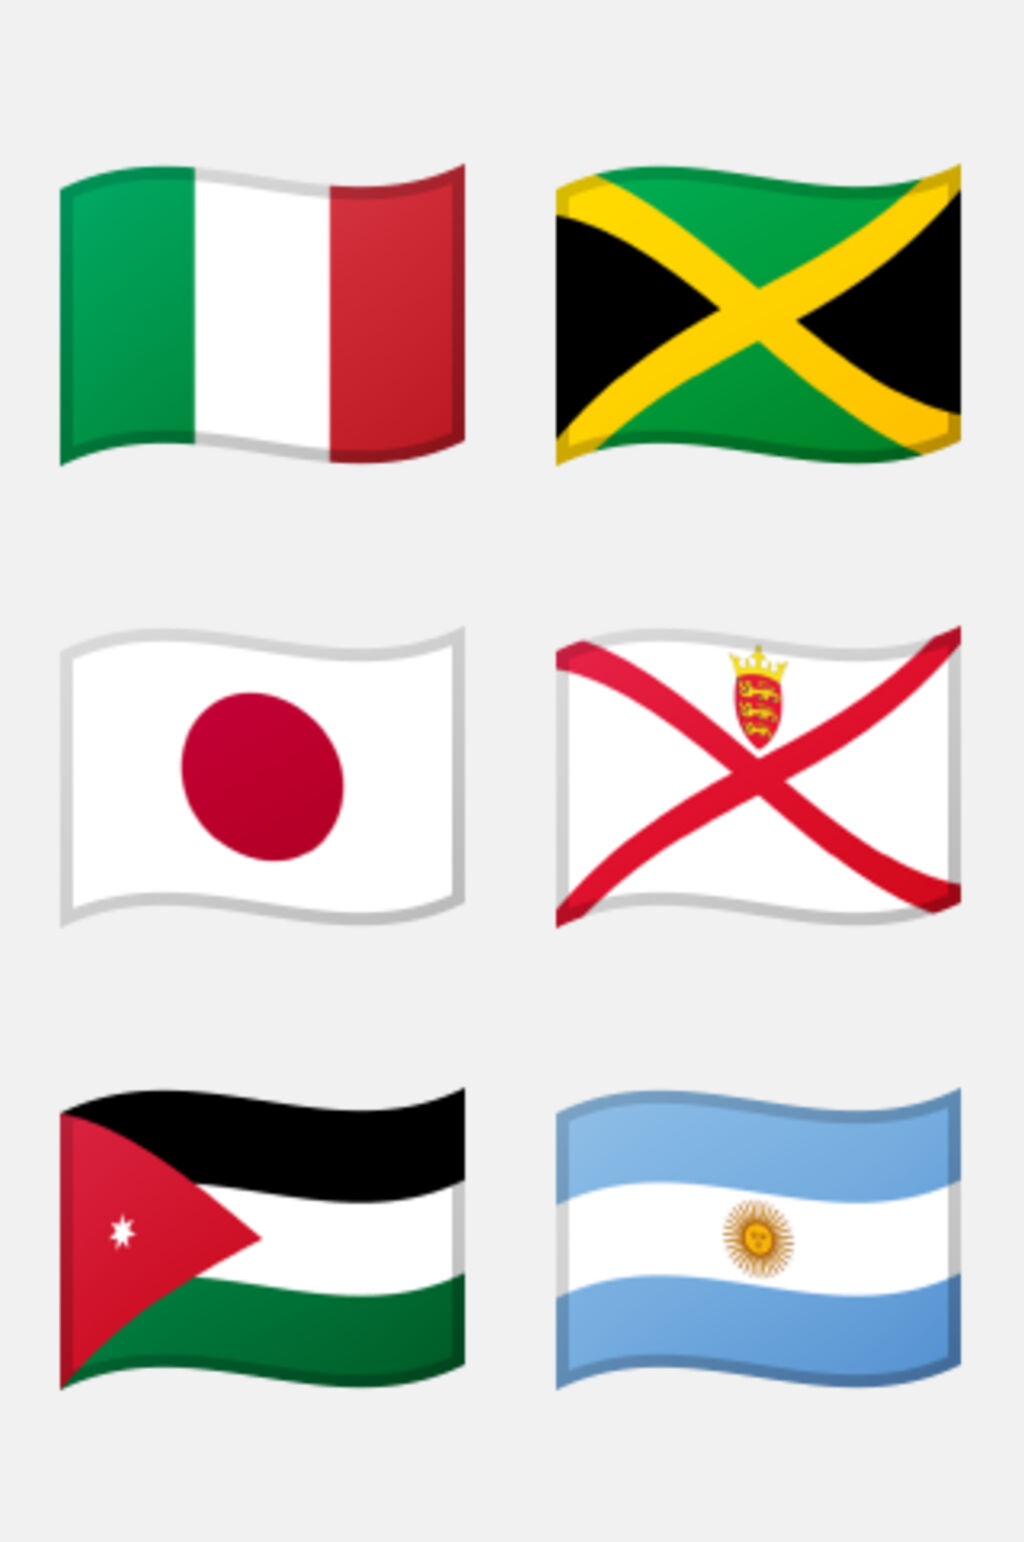 世界各国国徽图案图片